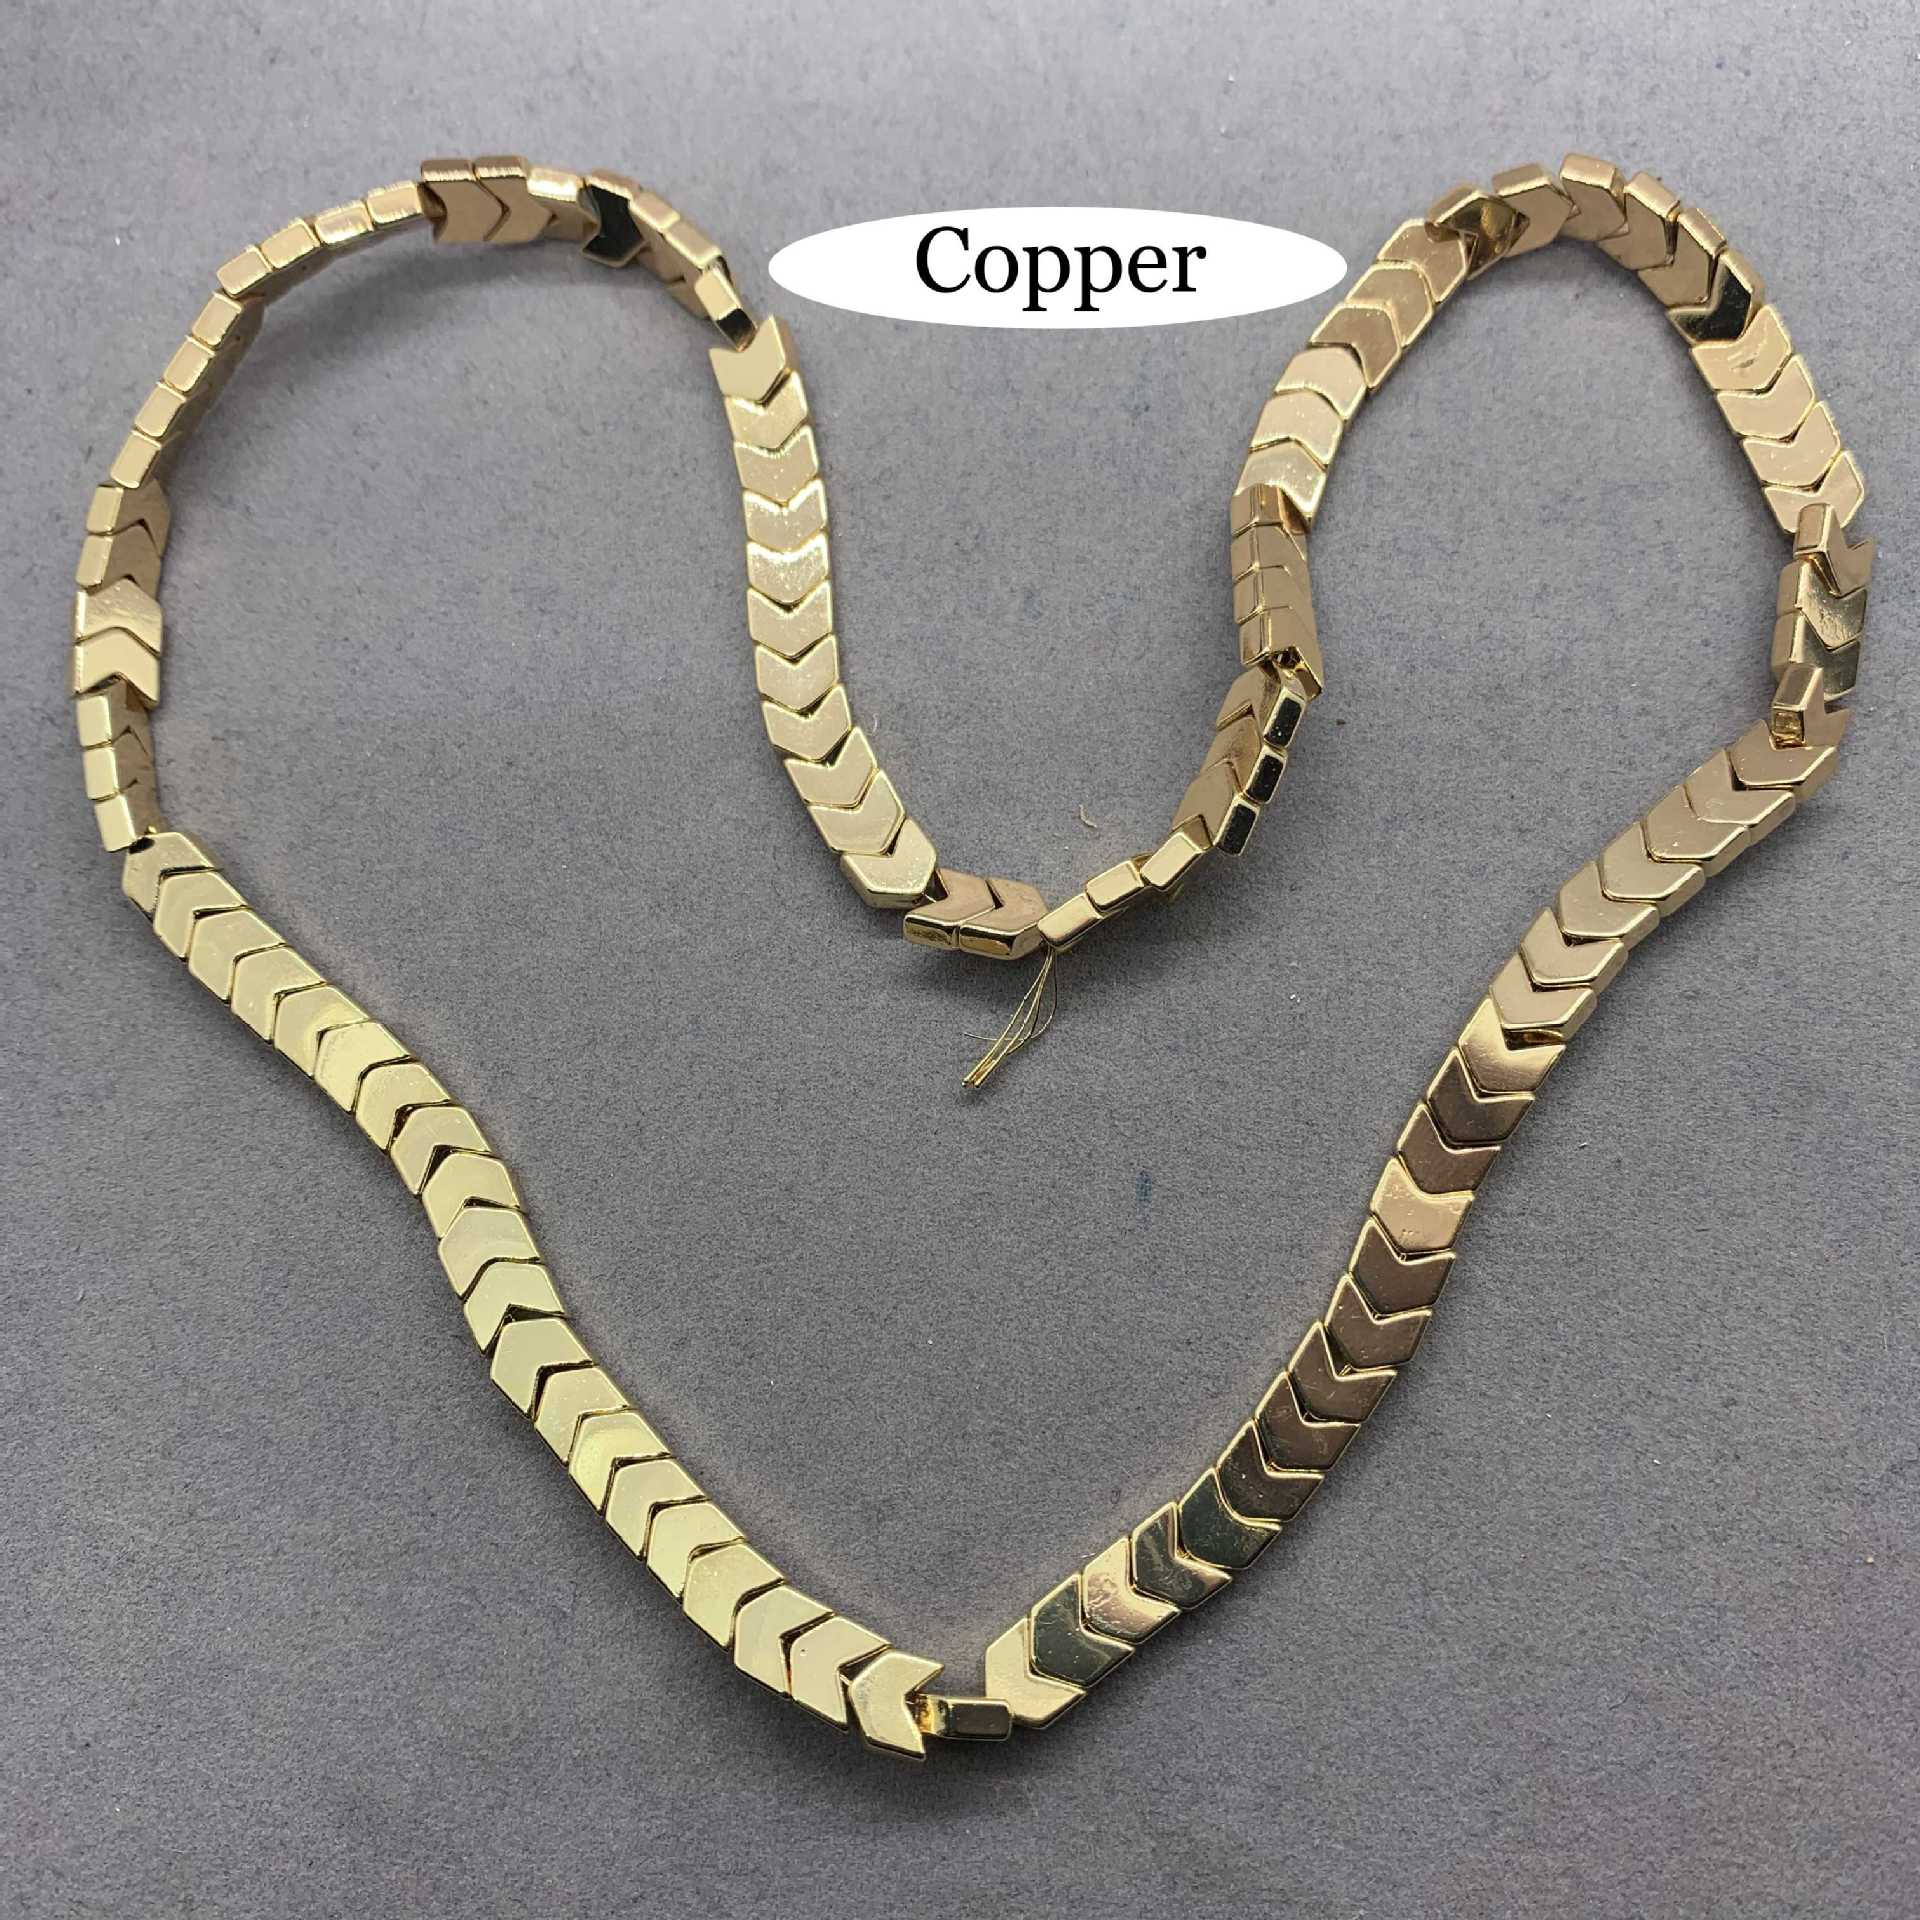 4:copper